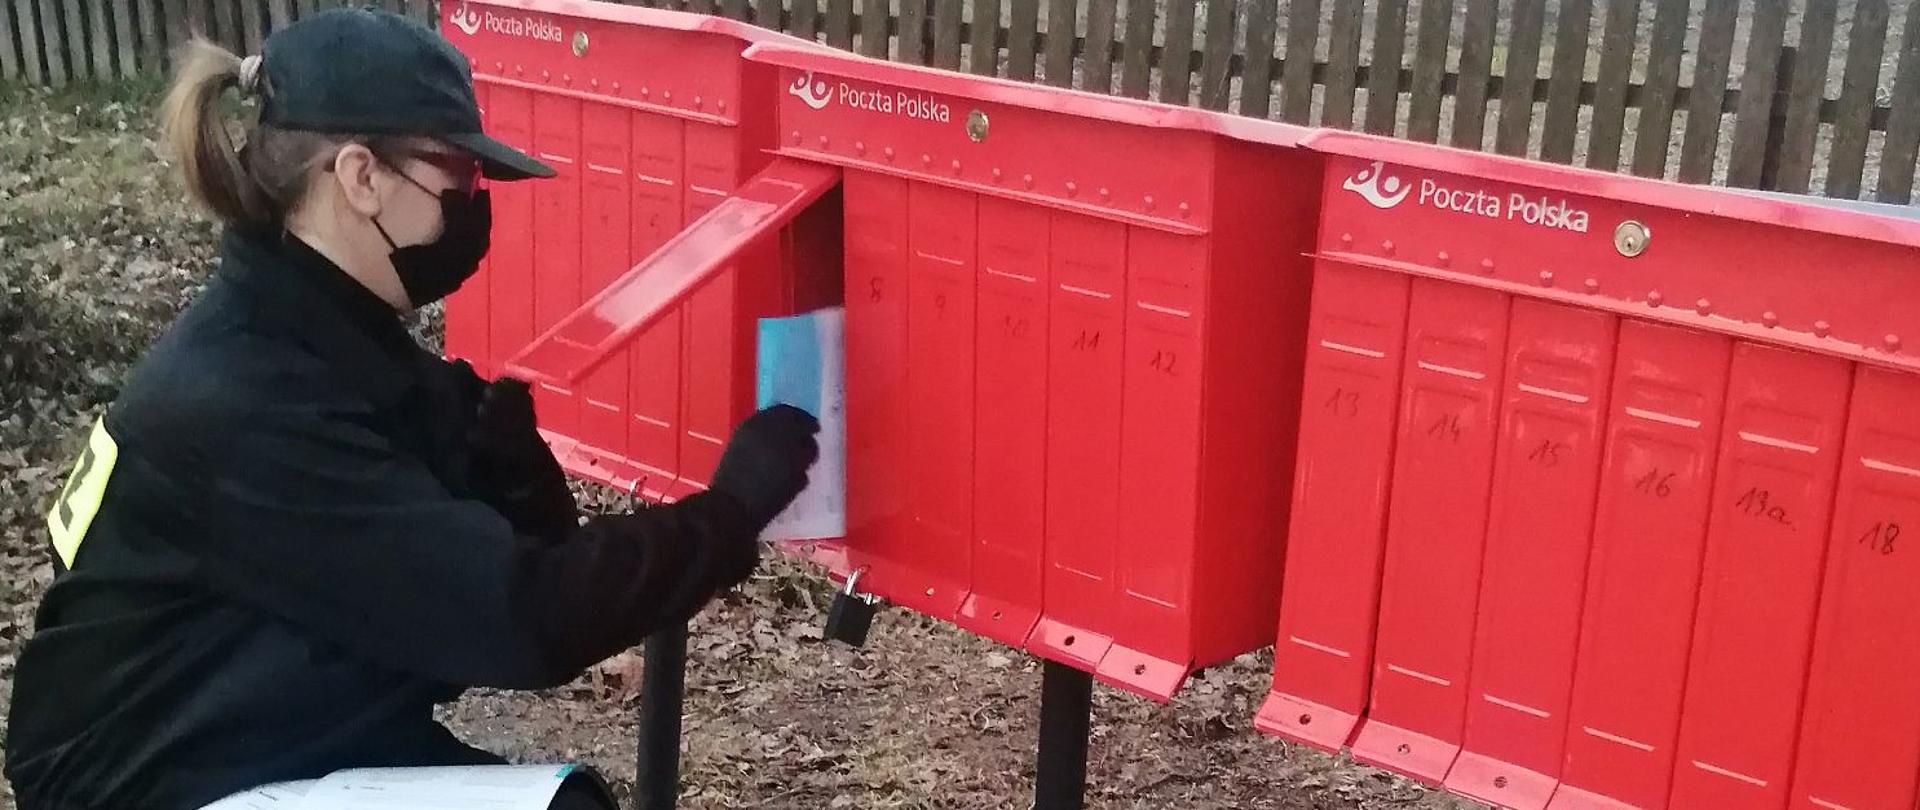 Druhna wkładająca ulotki do skrytek pocztowych